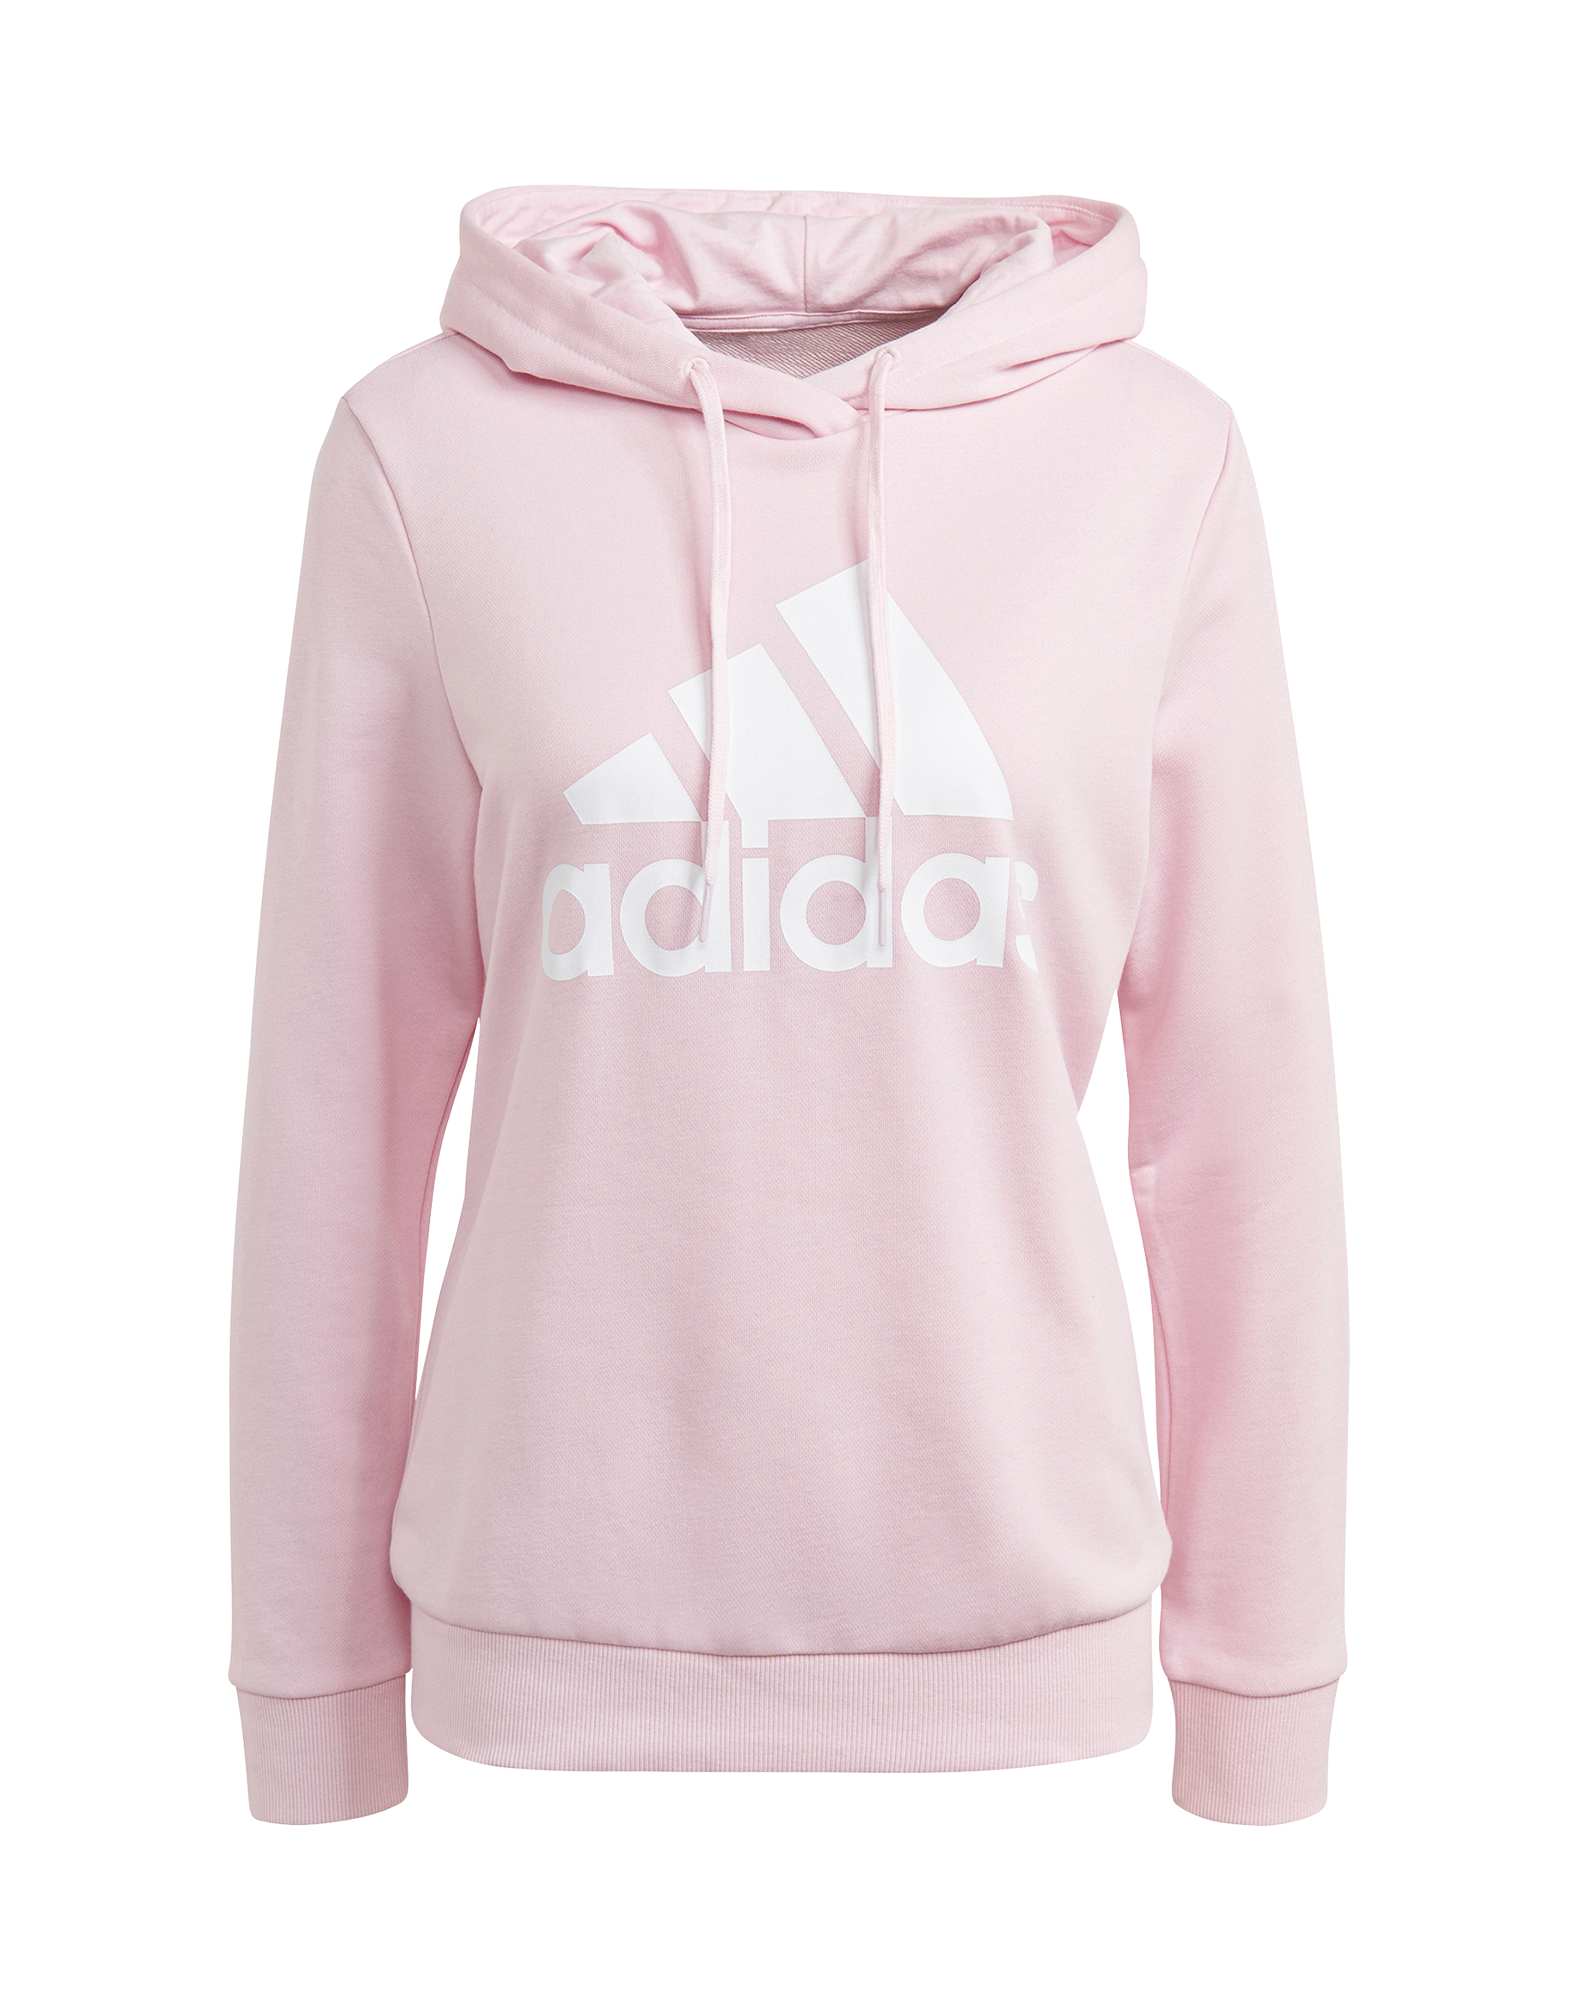 form humor overrasket Køb Adidas BL FT trøje til dame i lyserød